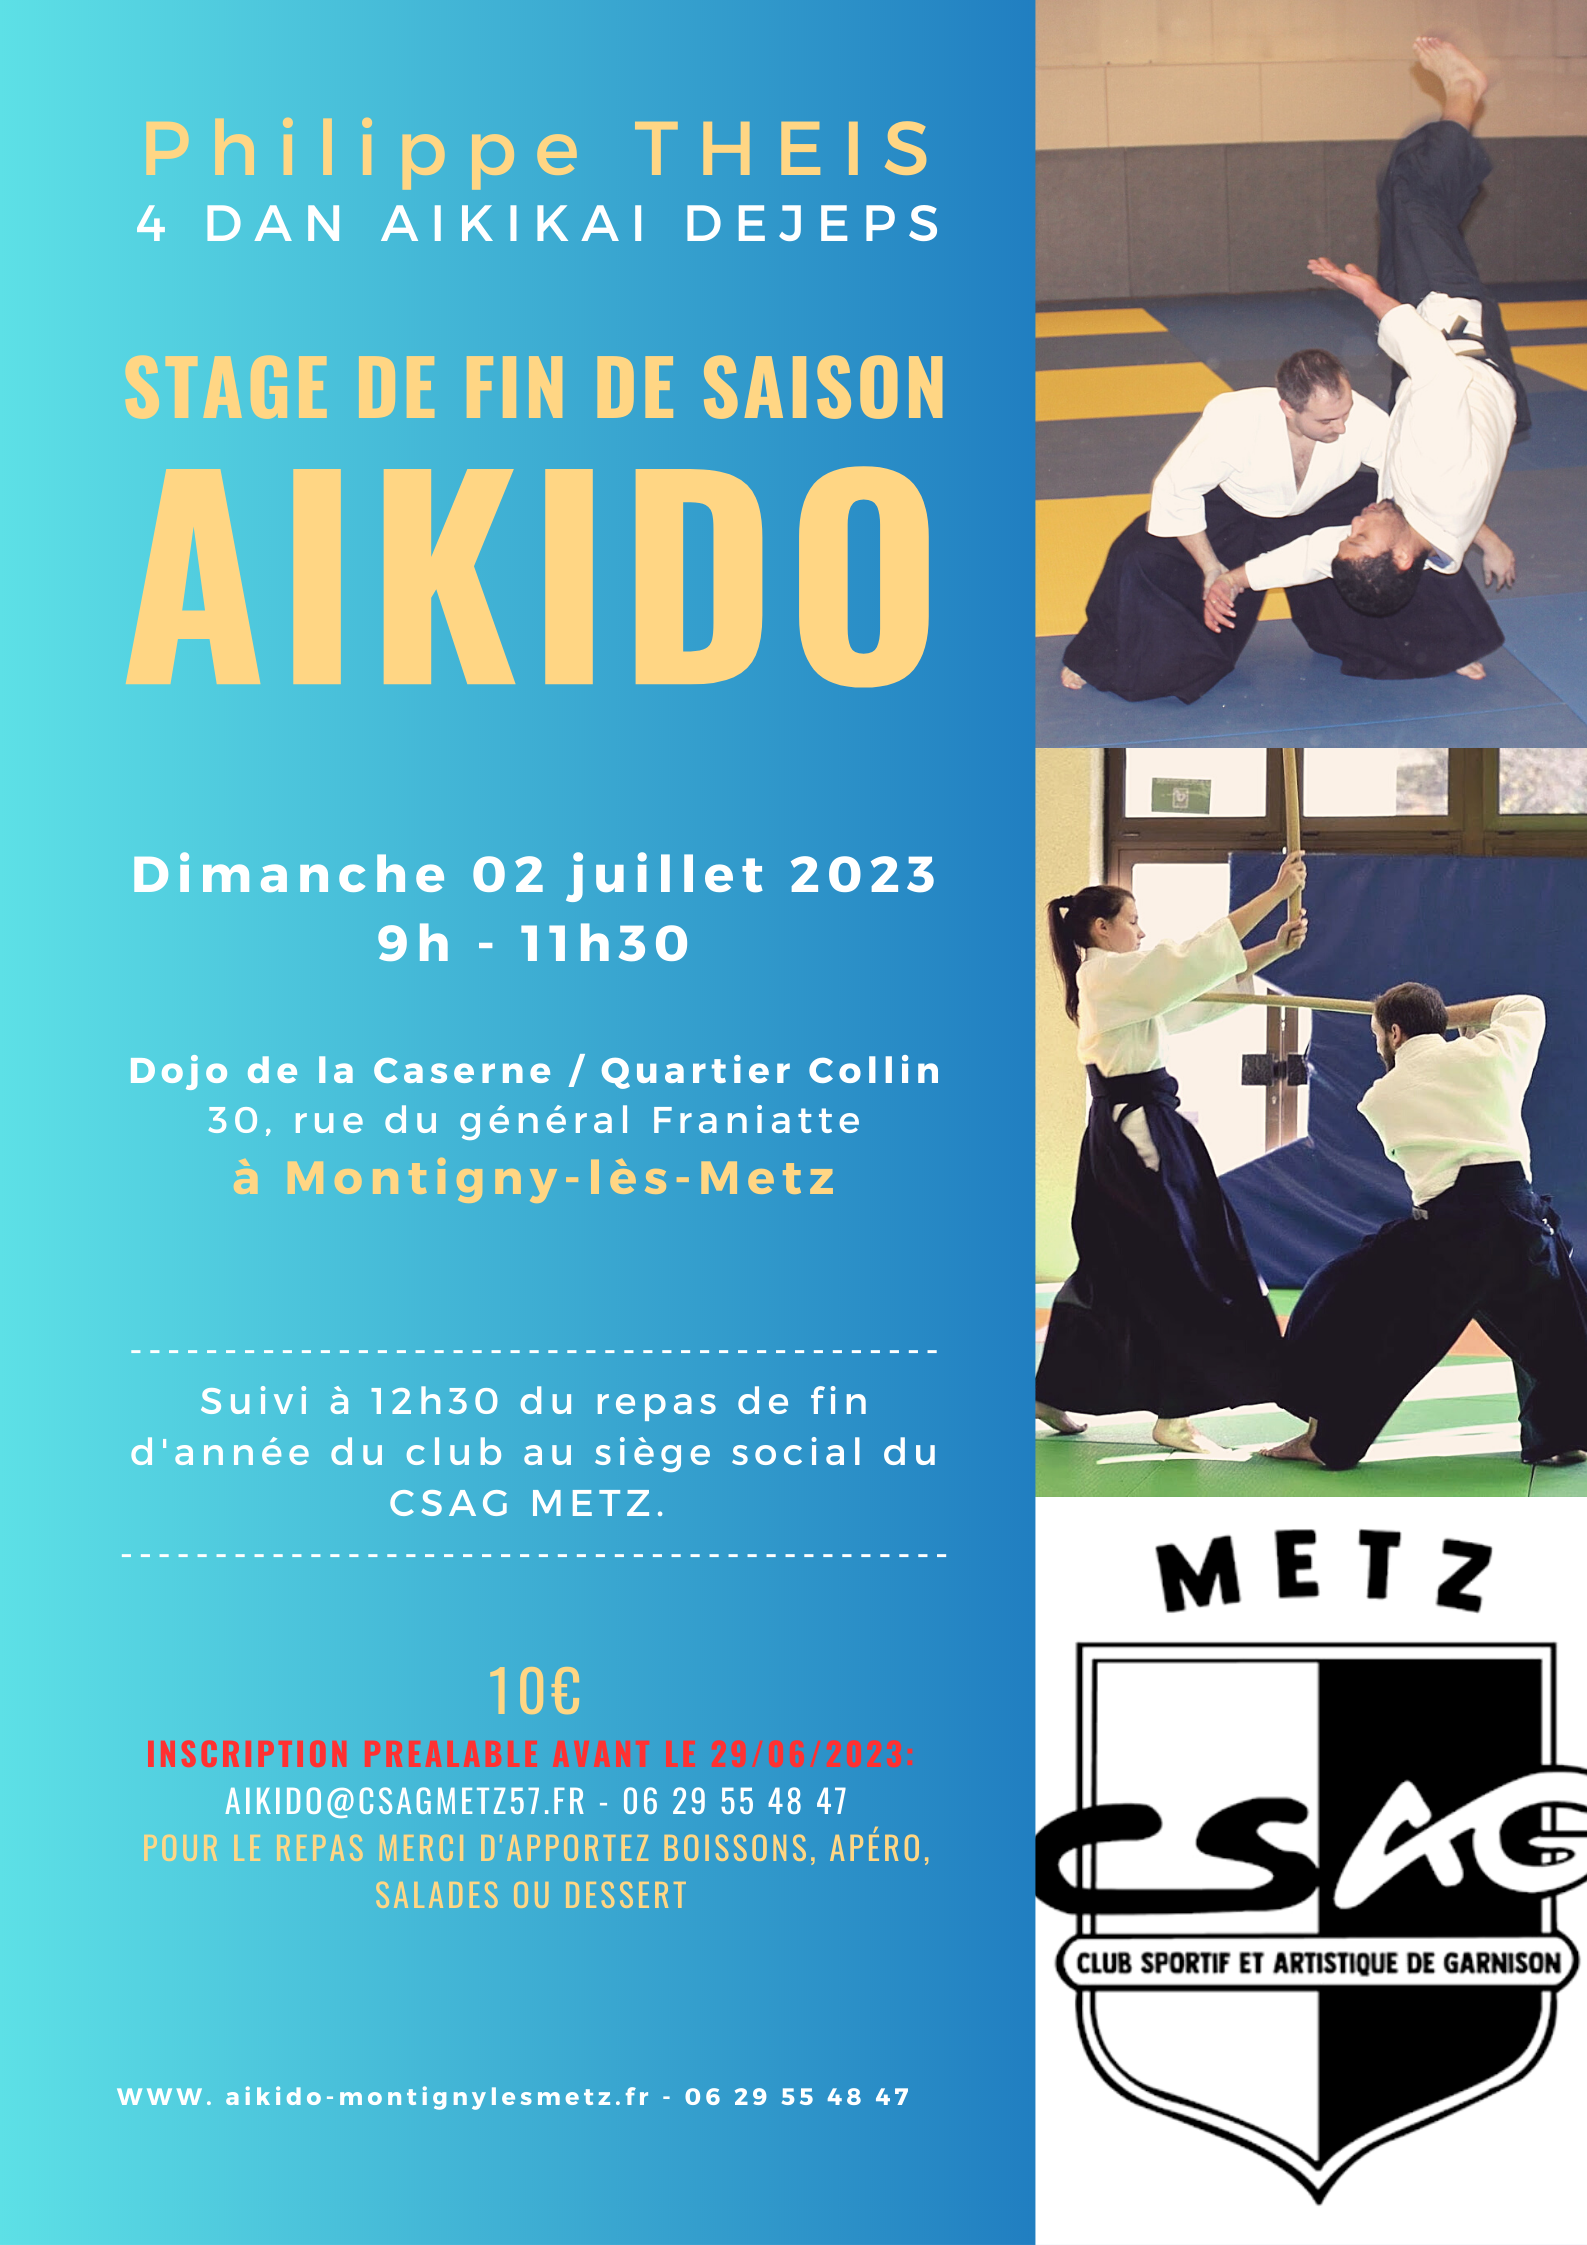 Affiche du Stage d'Aïkido à Montigny-lès-Metz animé par Philippe Theis le dimanche 2 juillet 2023